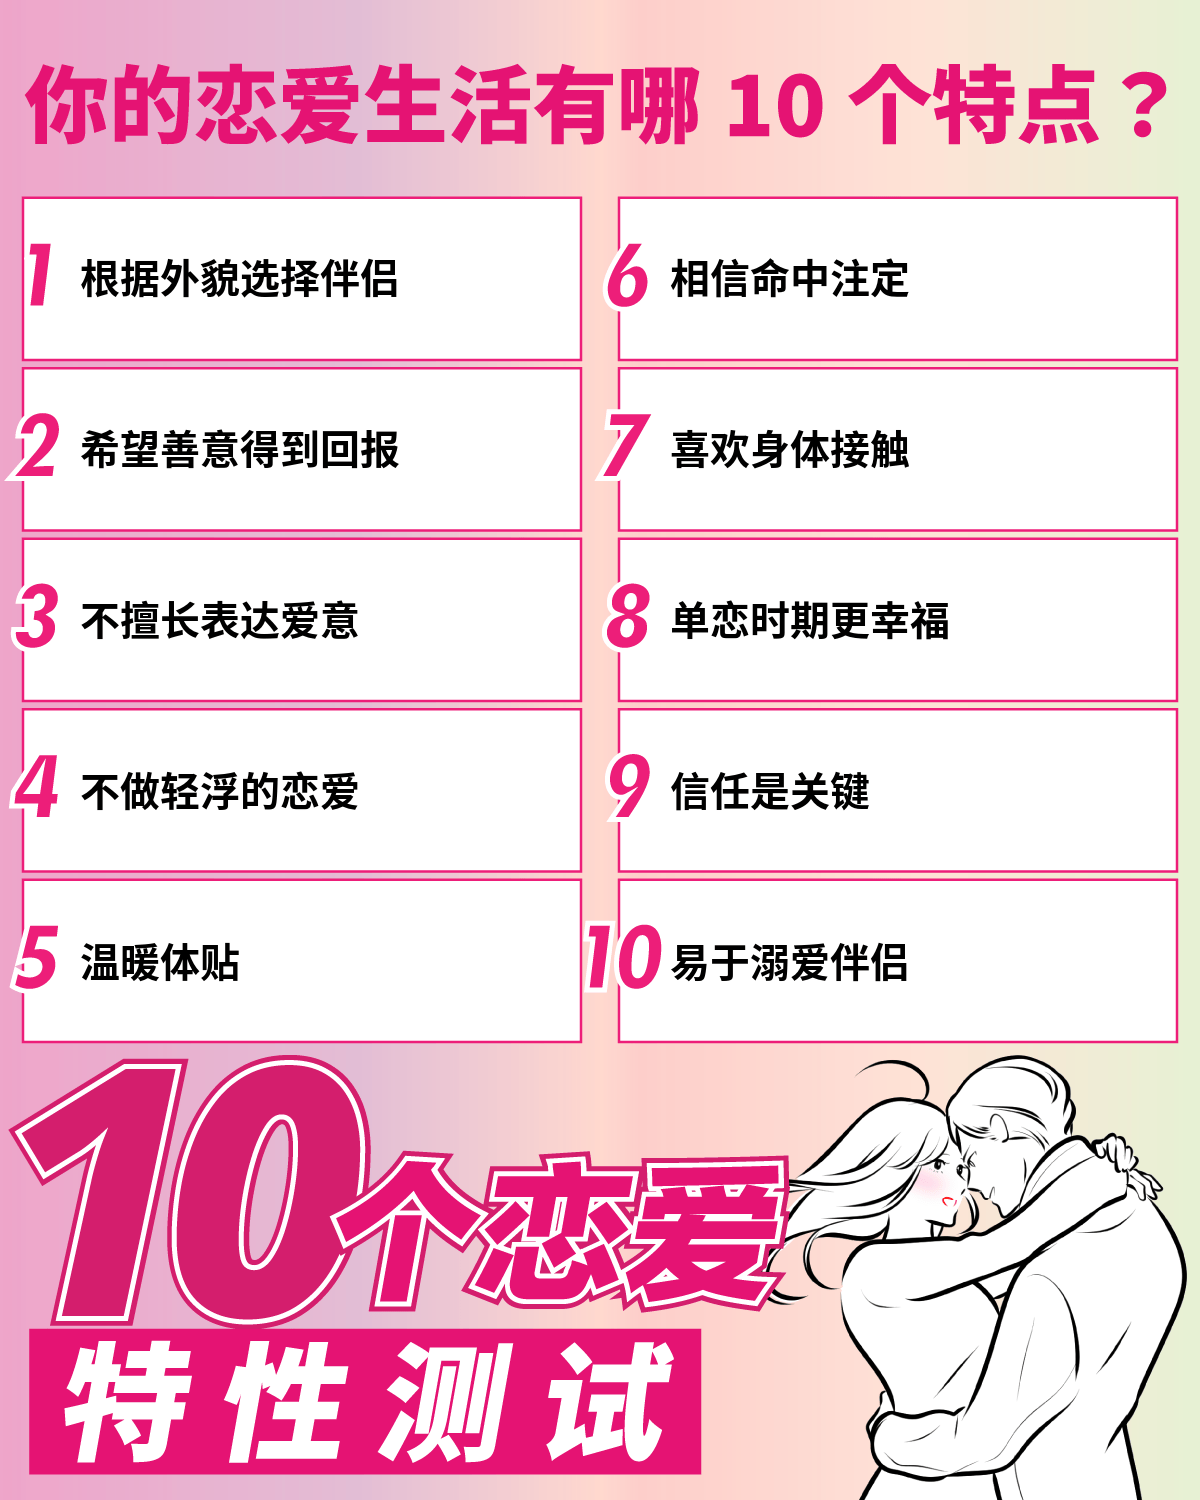 10个恋爱特性测试 | 你的恋爱生活有哪10个特点？